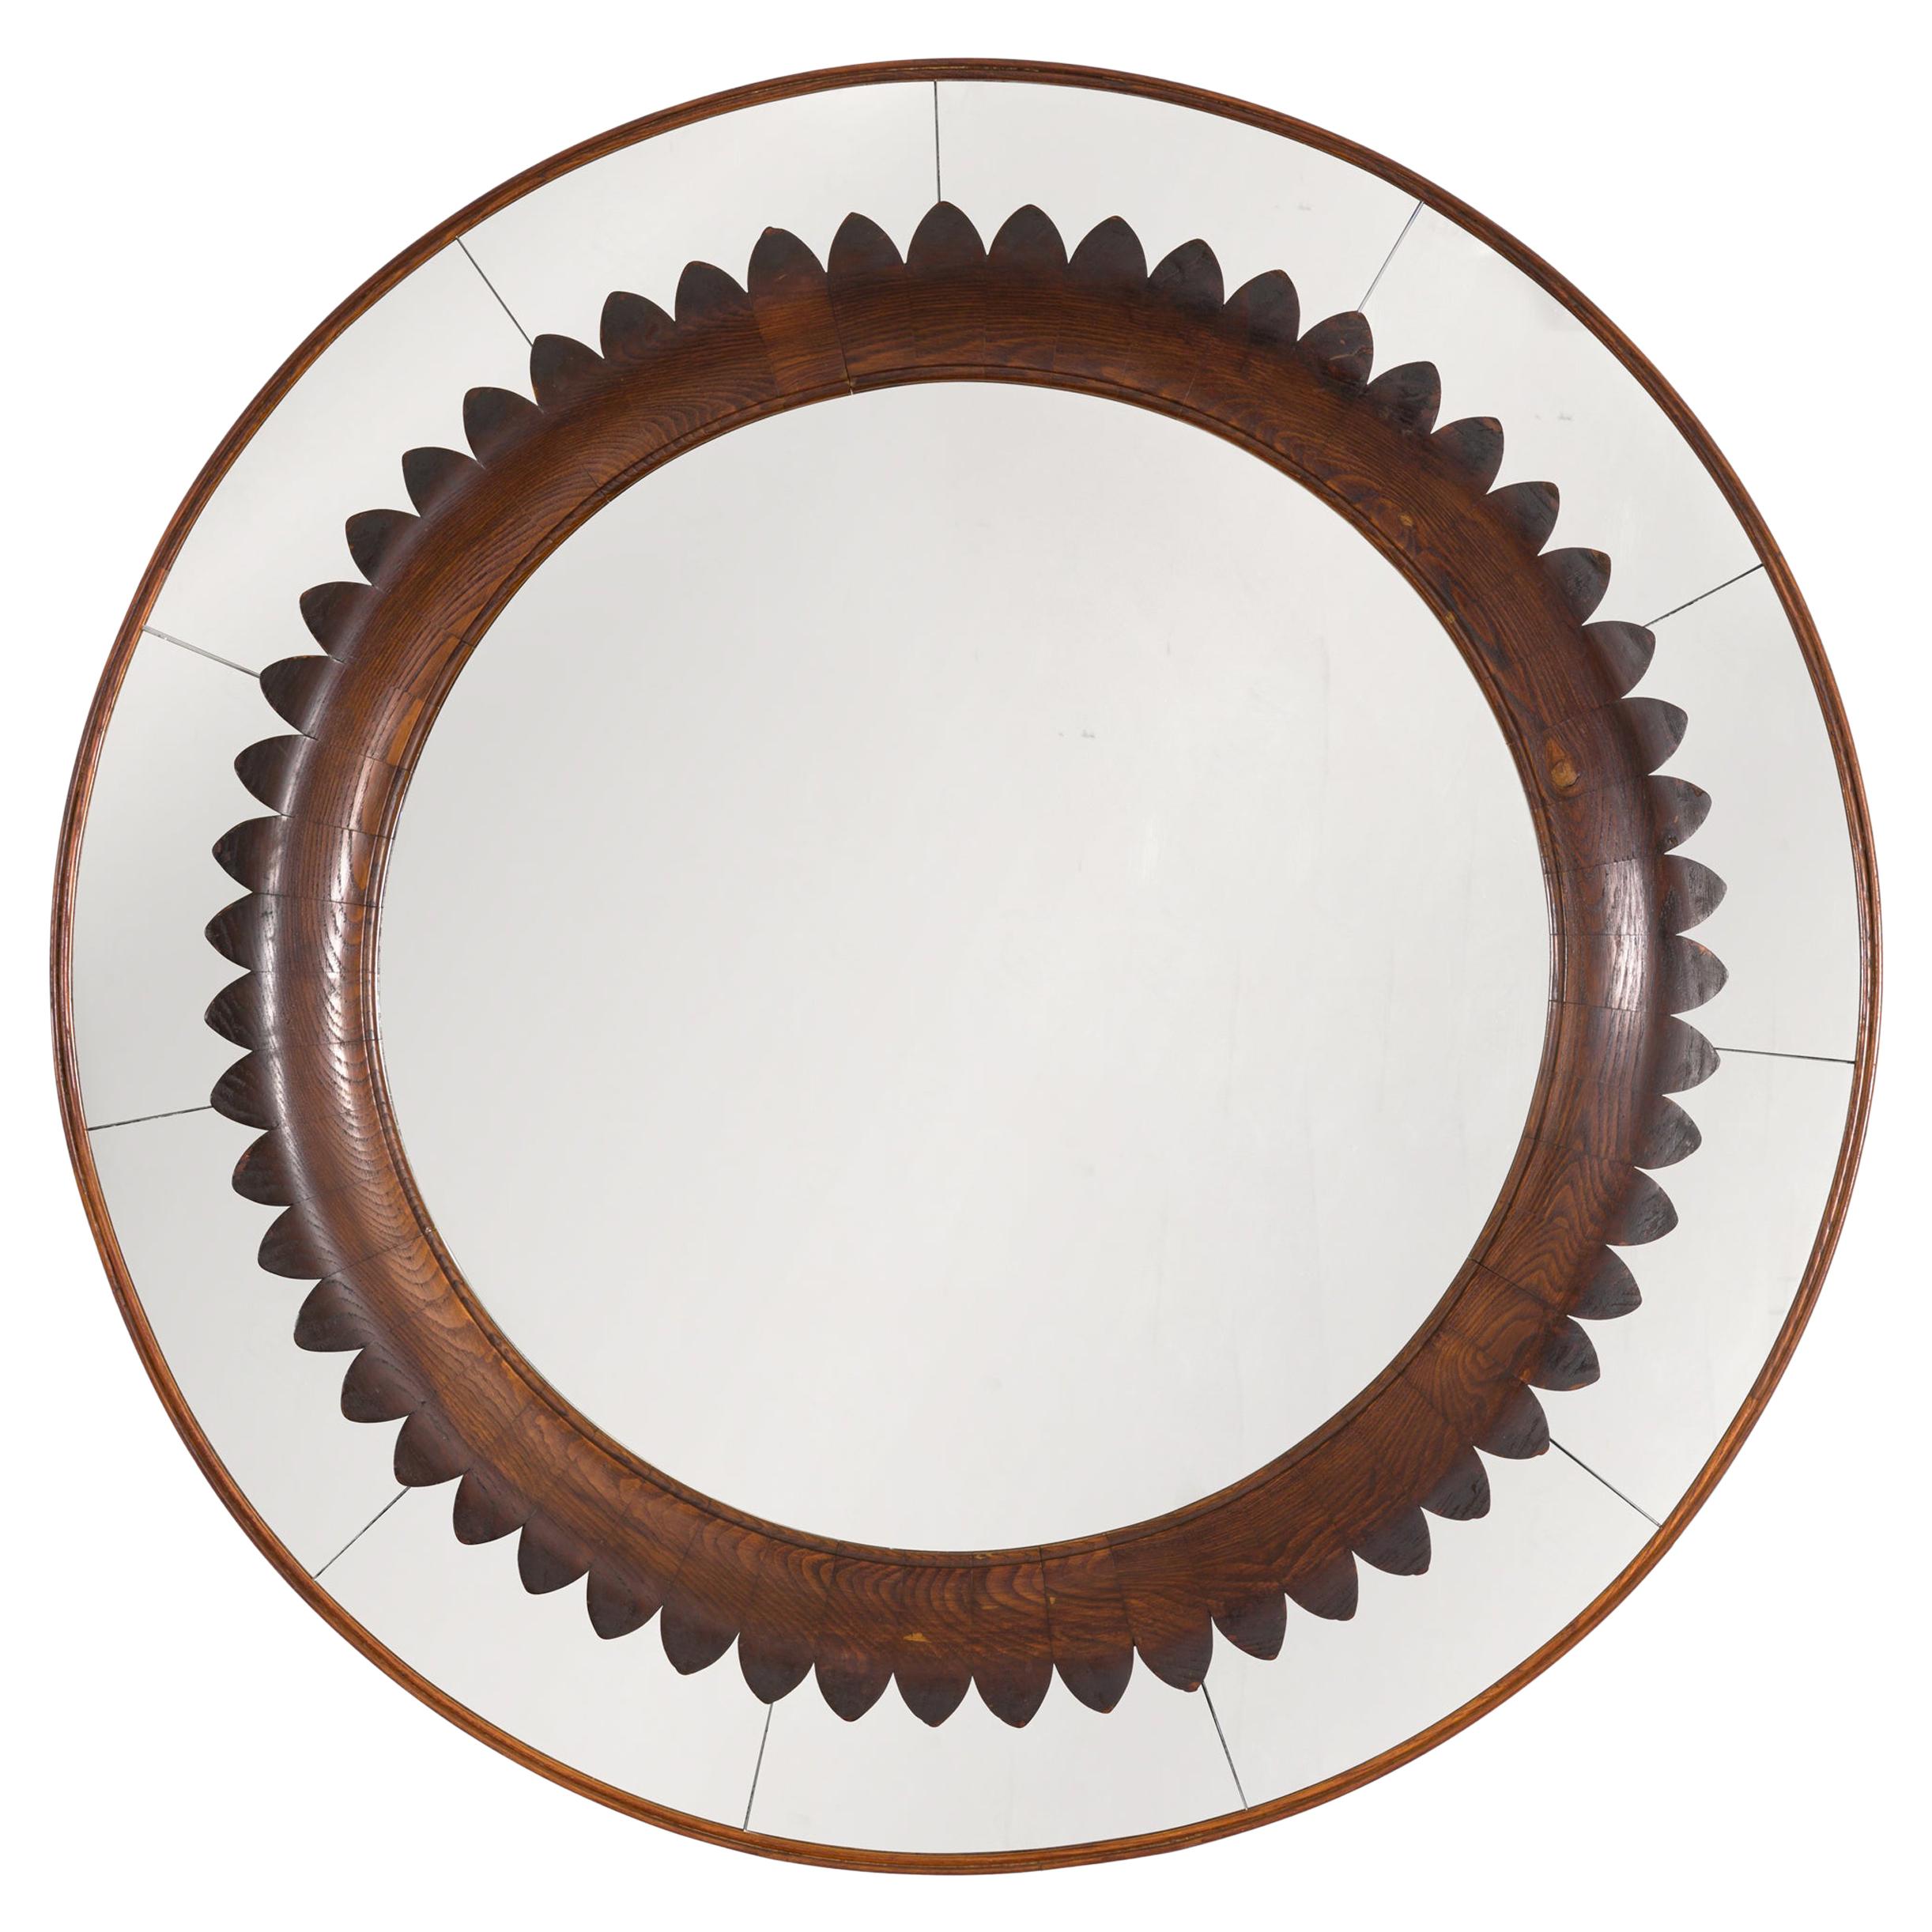 Circular Carved Walnut Wall Mirror by Fratelli Marelli for Framar, Italy 1950s